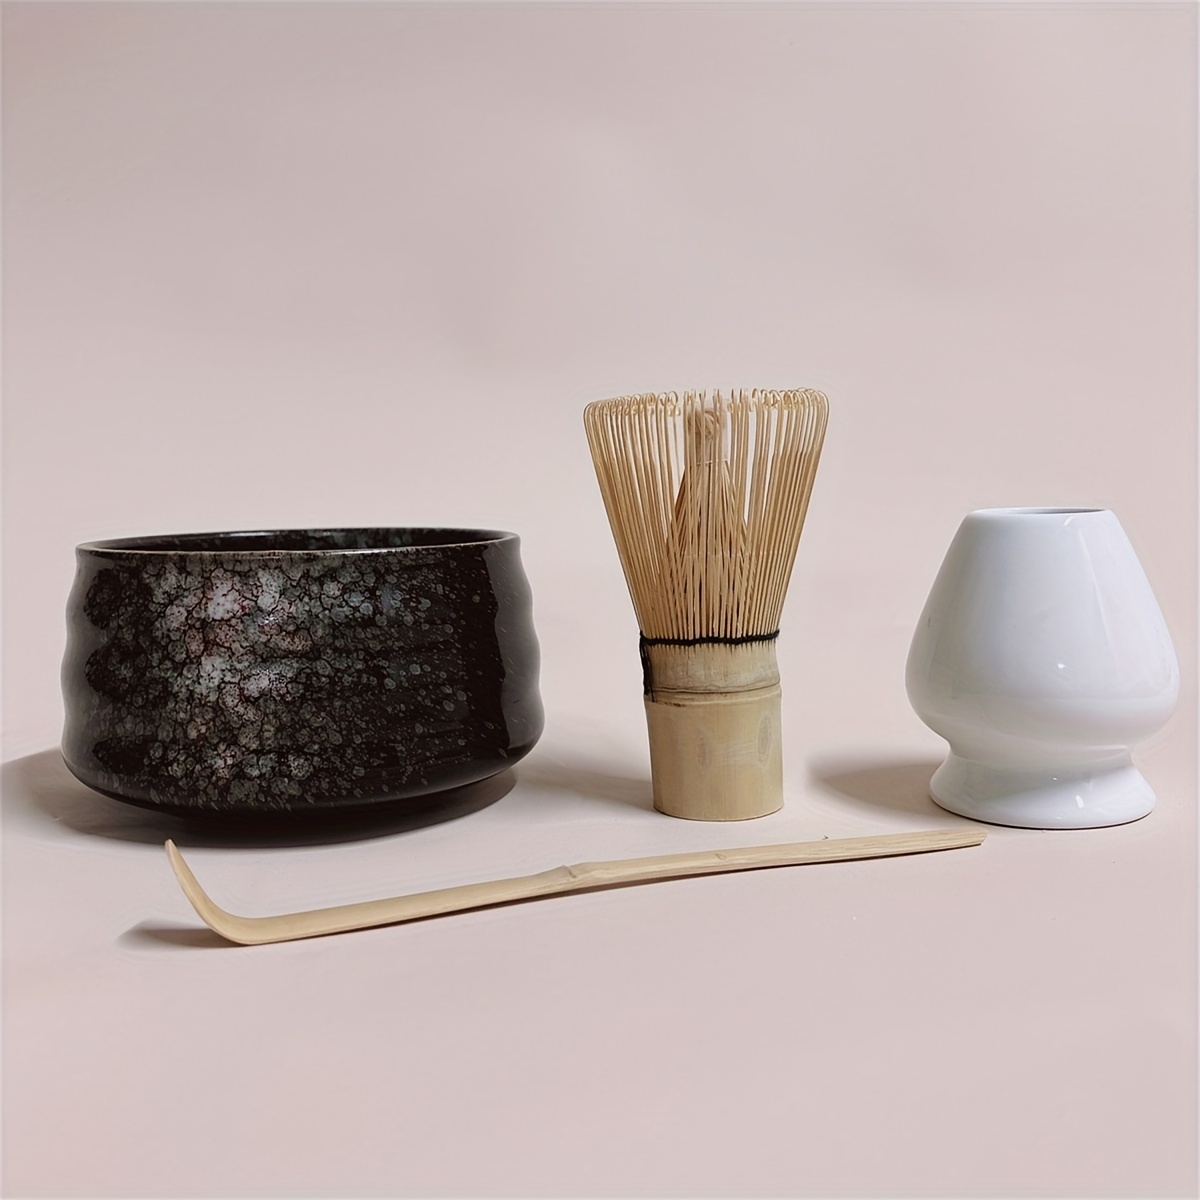 Japanese Matcha Tea Set Matcha Bowl Bamboo Whisk Holder Tray